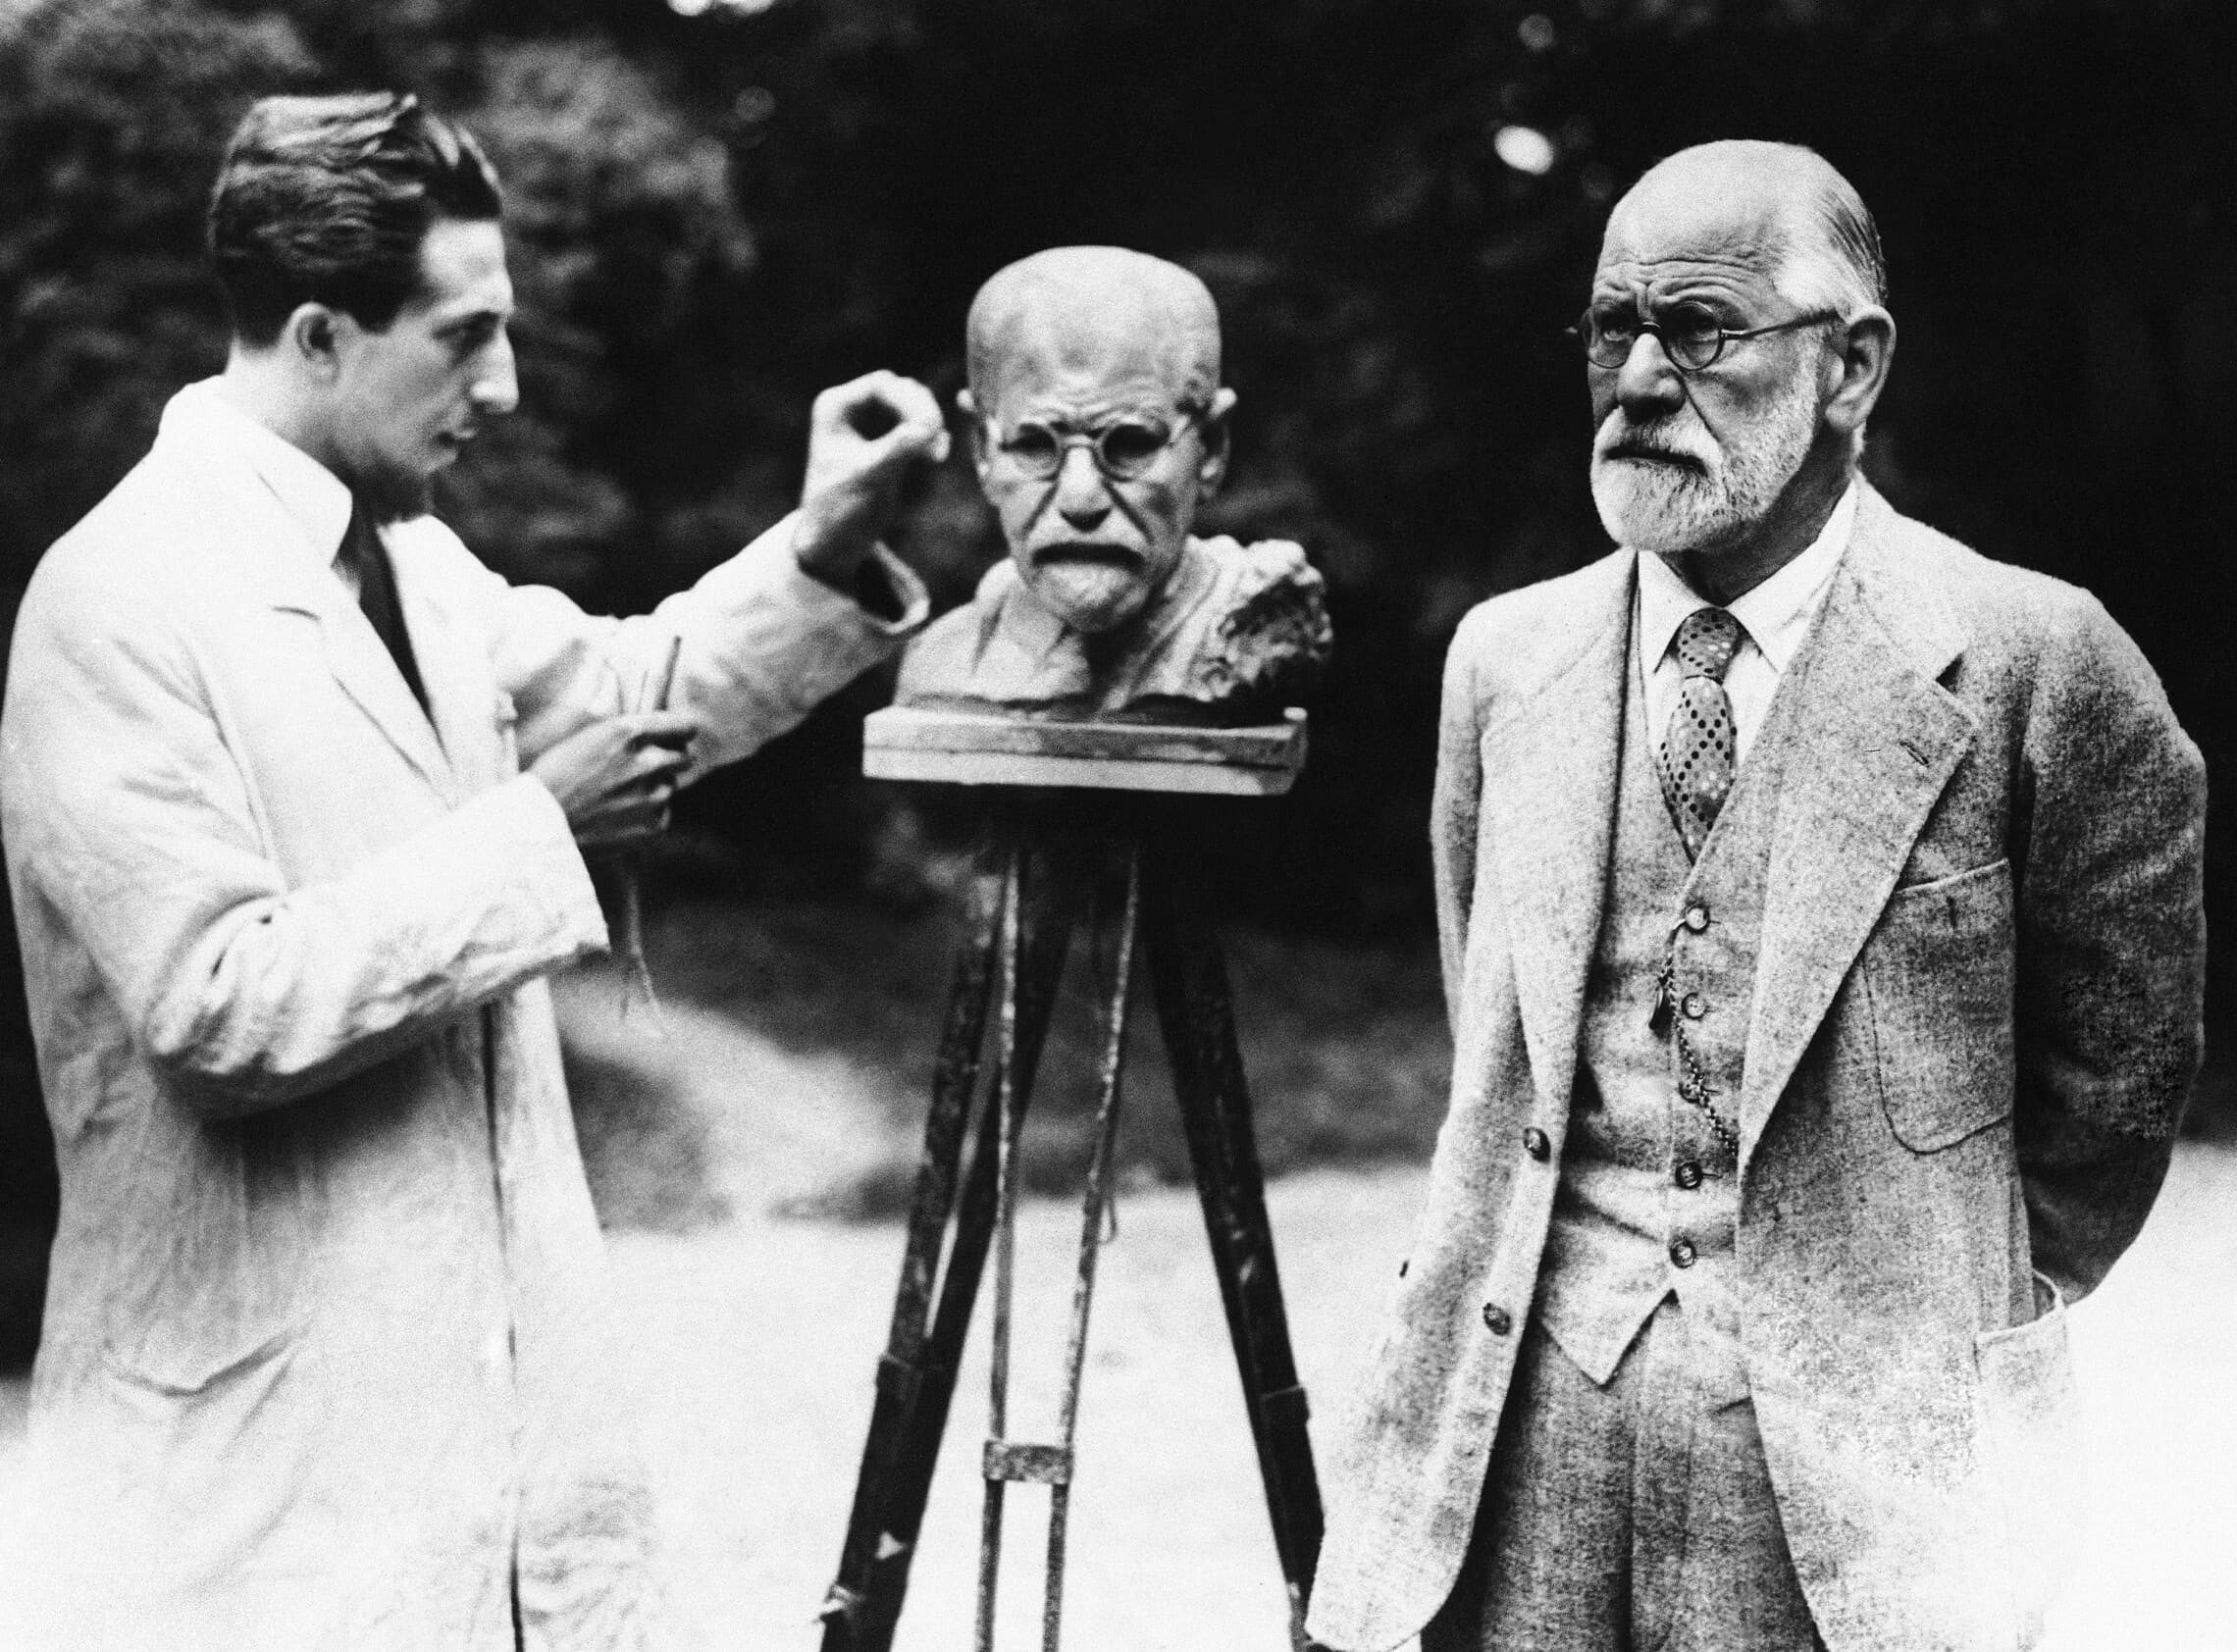 זיגמונד פרויד מדגמן עבור הפסל אוסקר נמון בוינה ב-1931 (צילום: AP Photo)